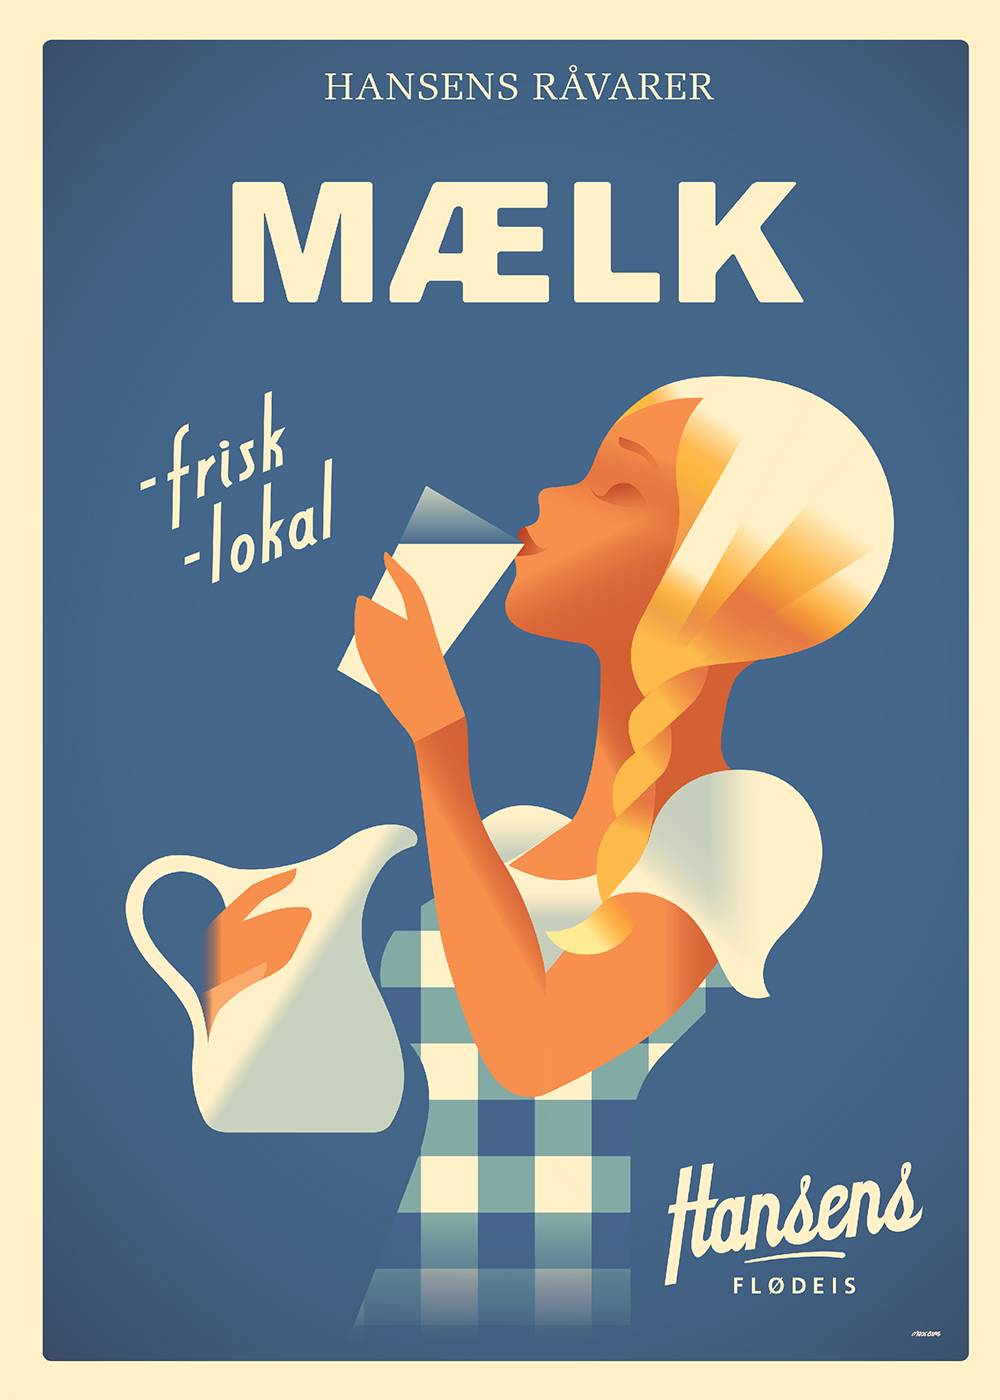 Hansens Mælk Mads Berg Illustration